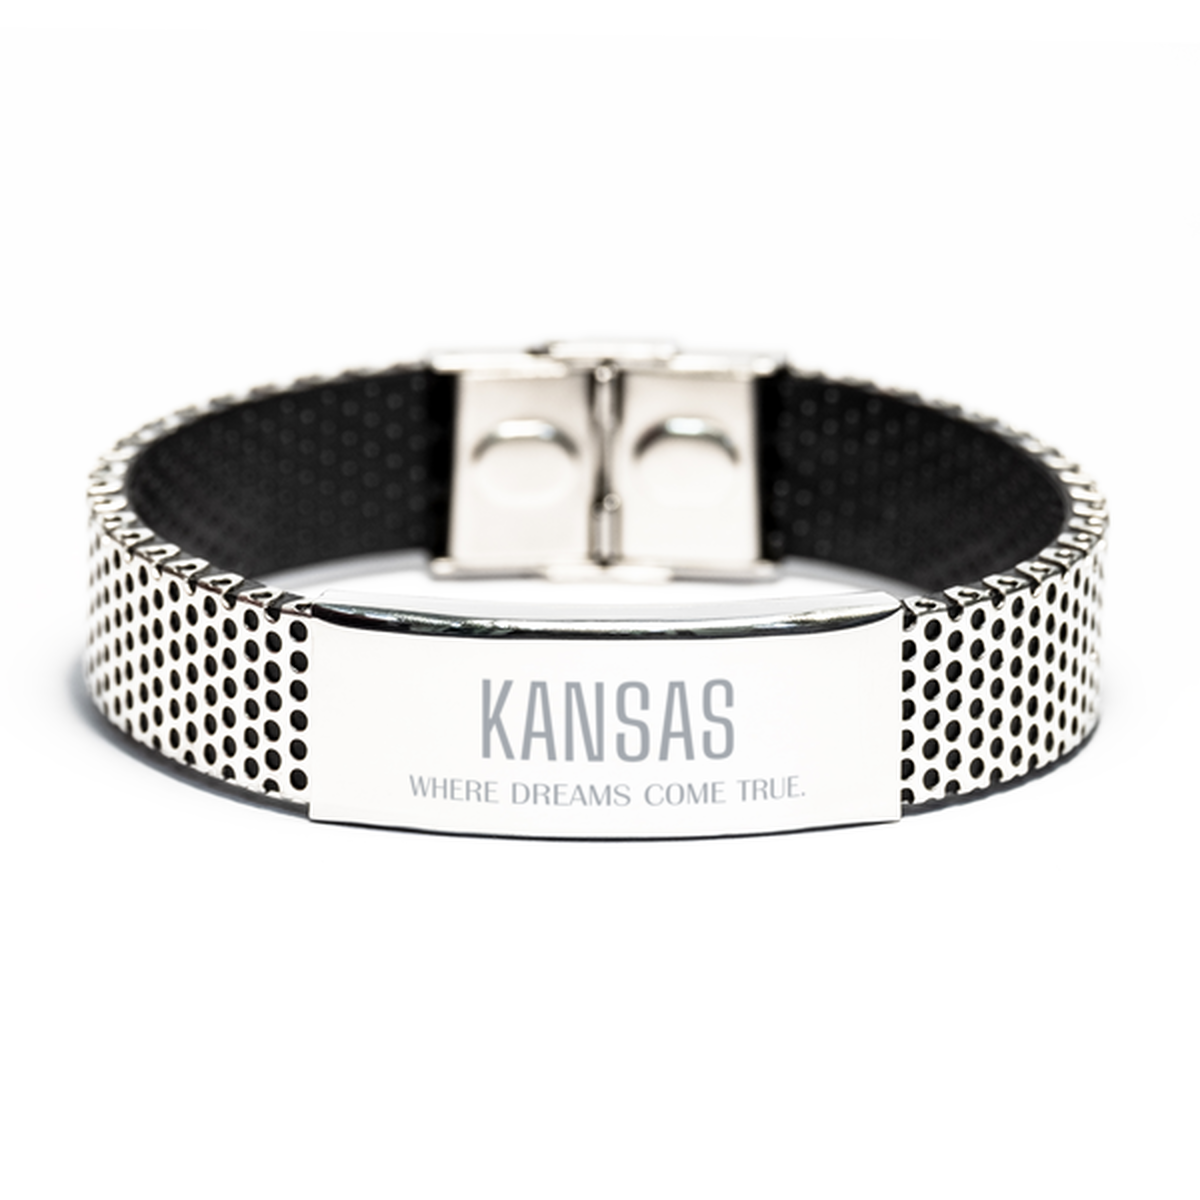 Love Kansas State Stainless Steel Bracelet, Kansas Where dreams come true, Birthday Inspirational Gifts For Kansas Men, Women, Friends